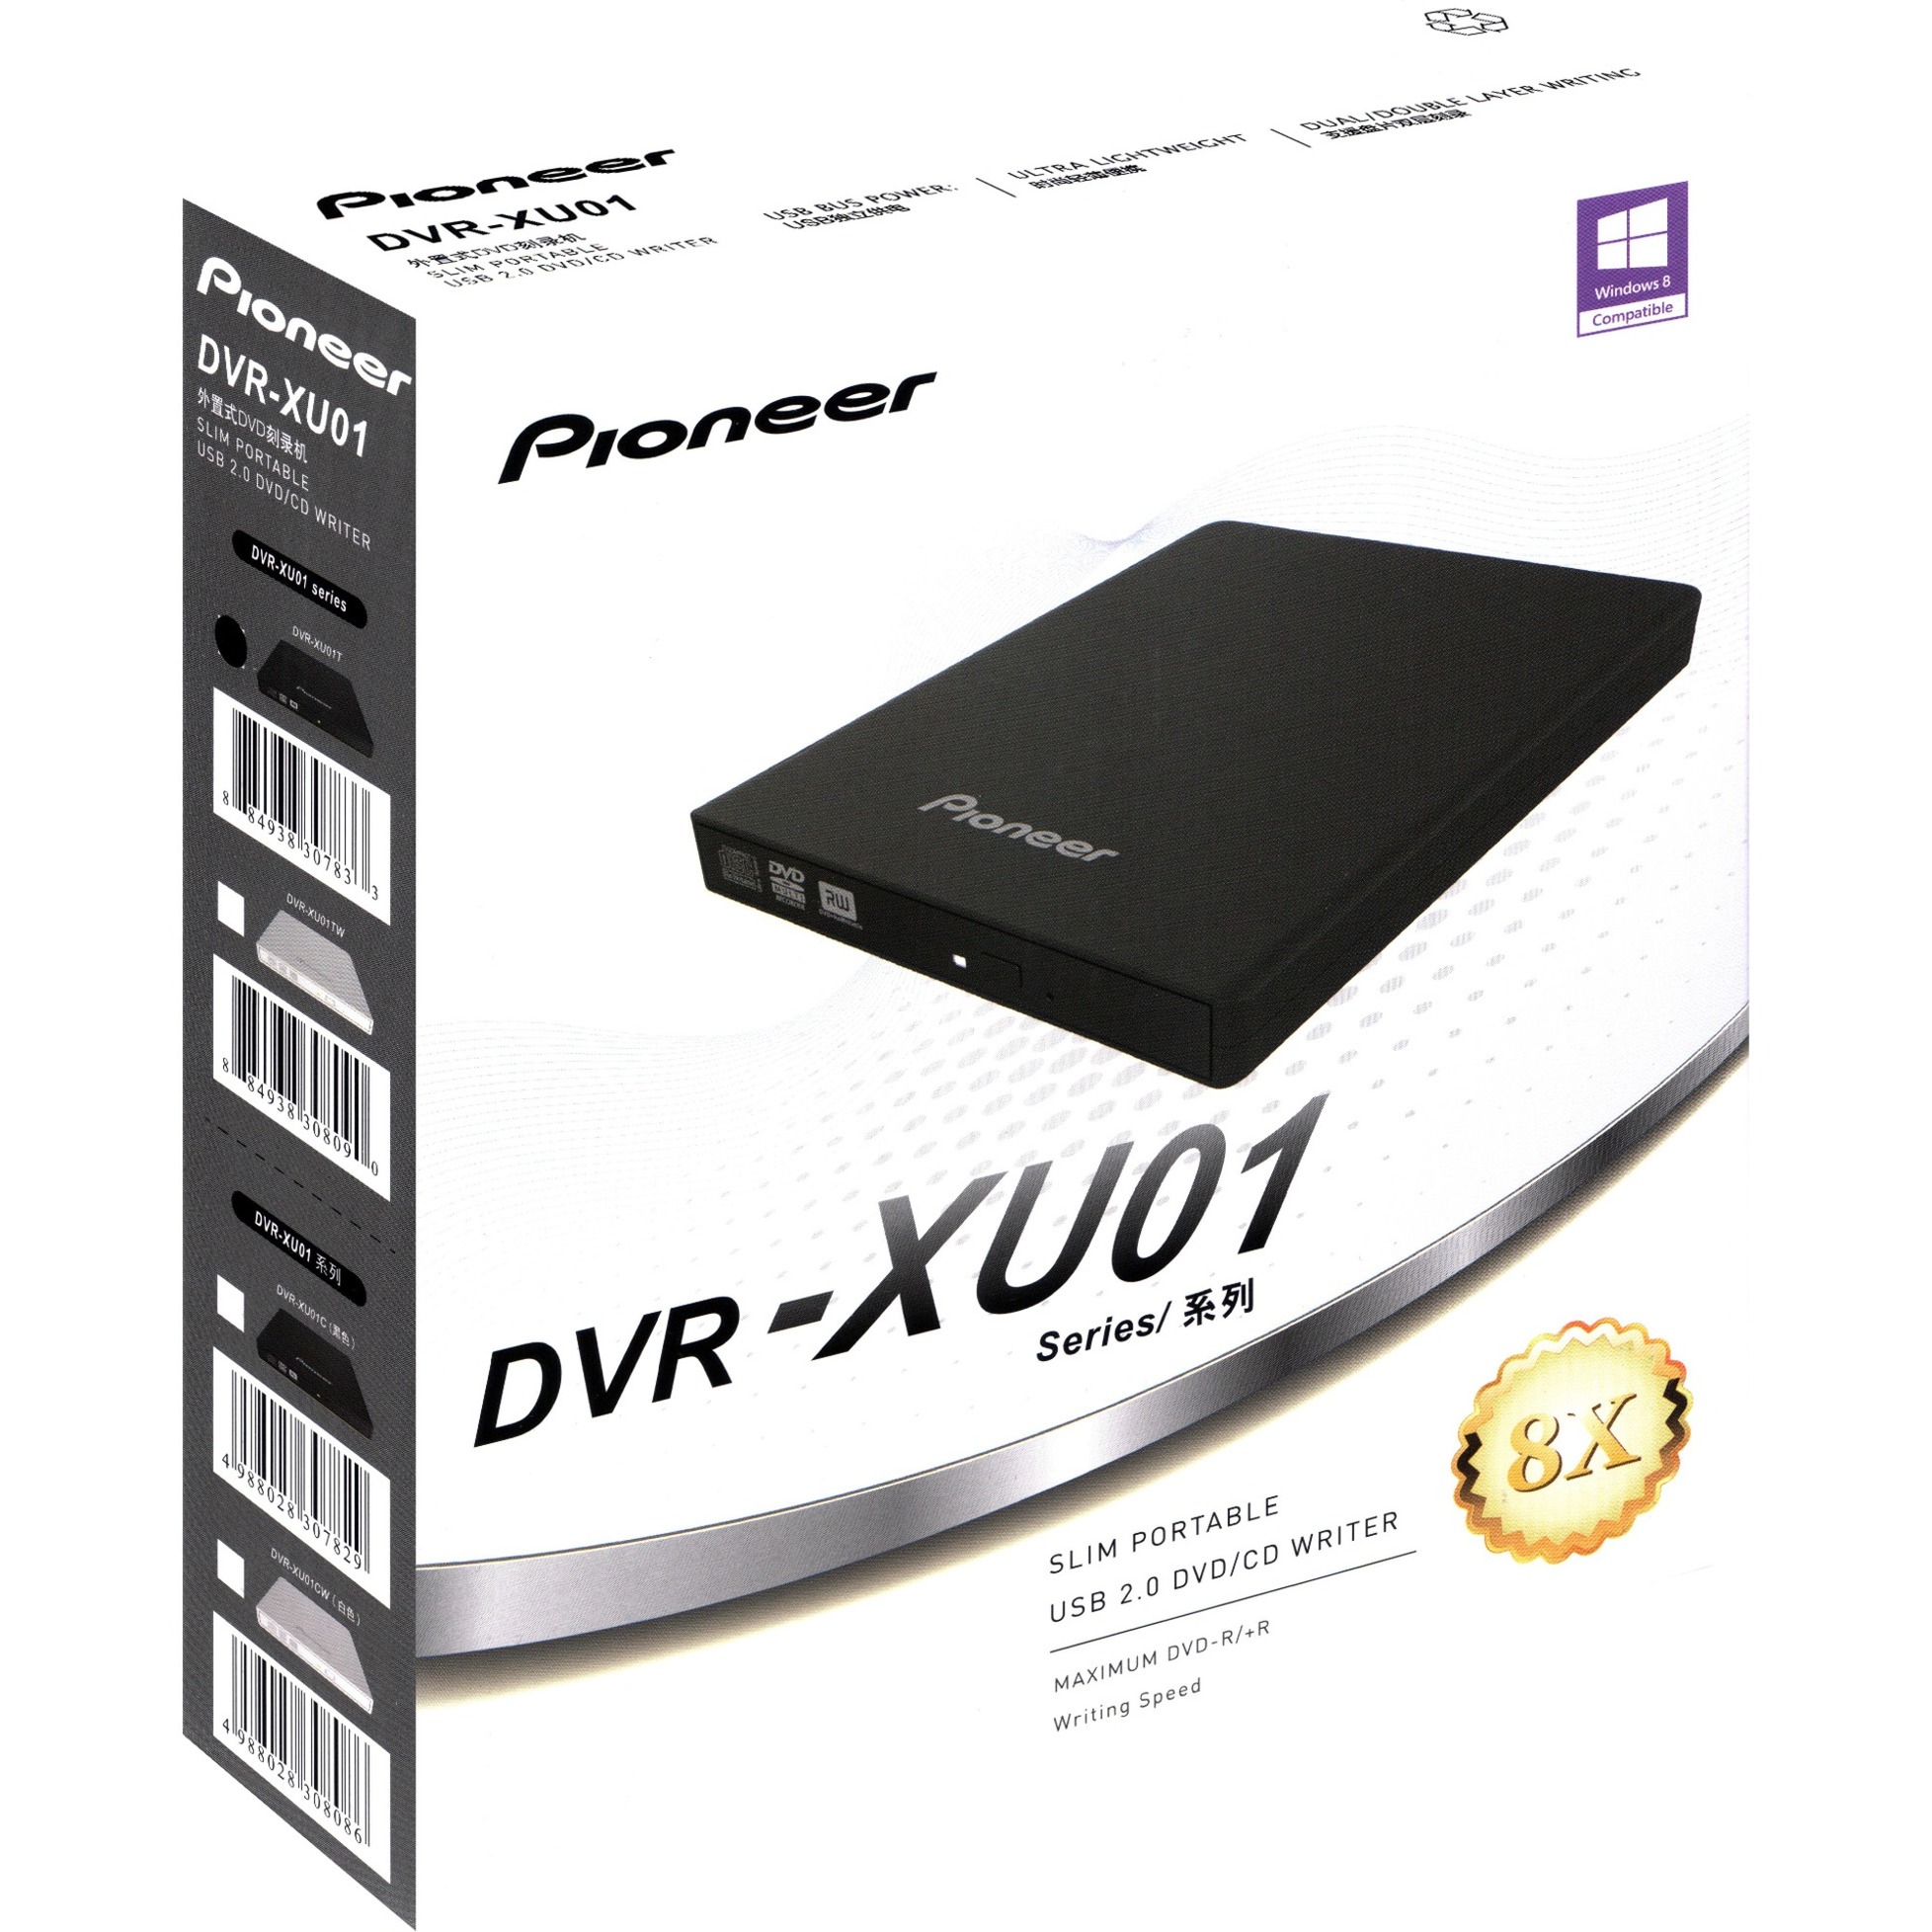 Image of Alternate - DVR-XU01T, externer DVD-Brenner online einkaufen bei Alternate